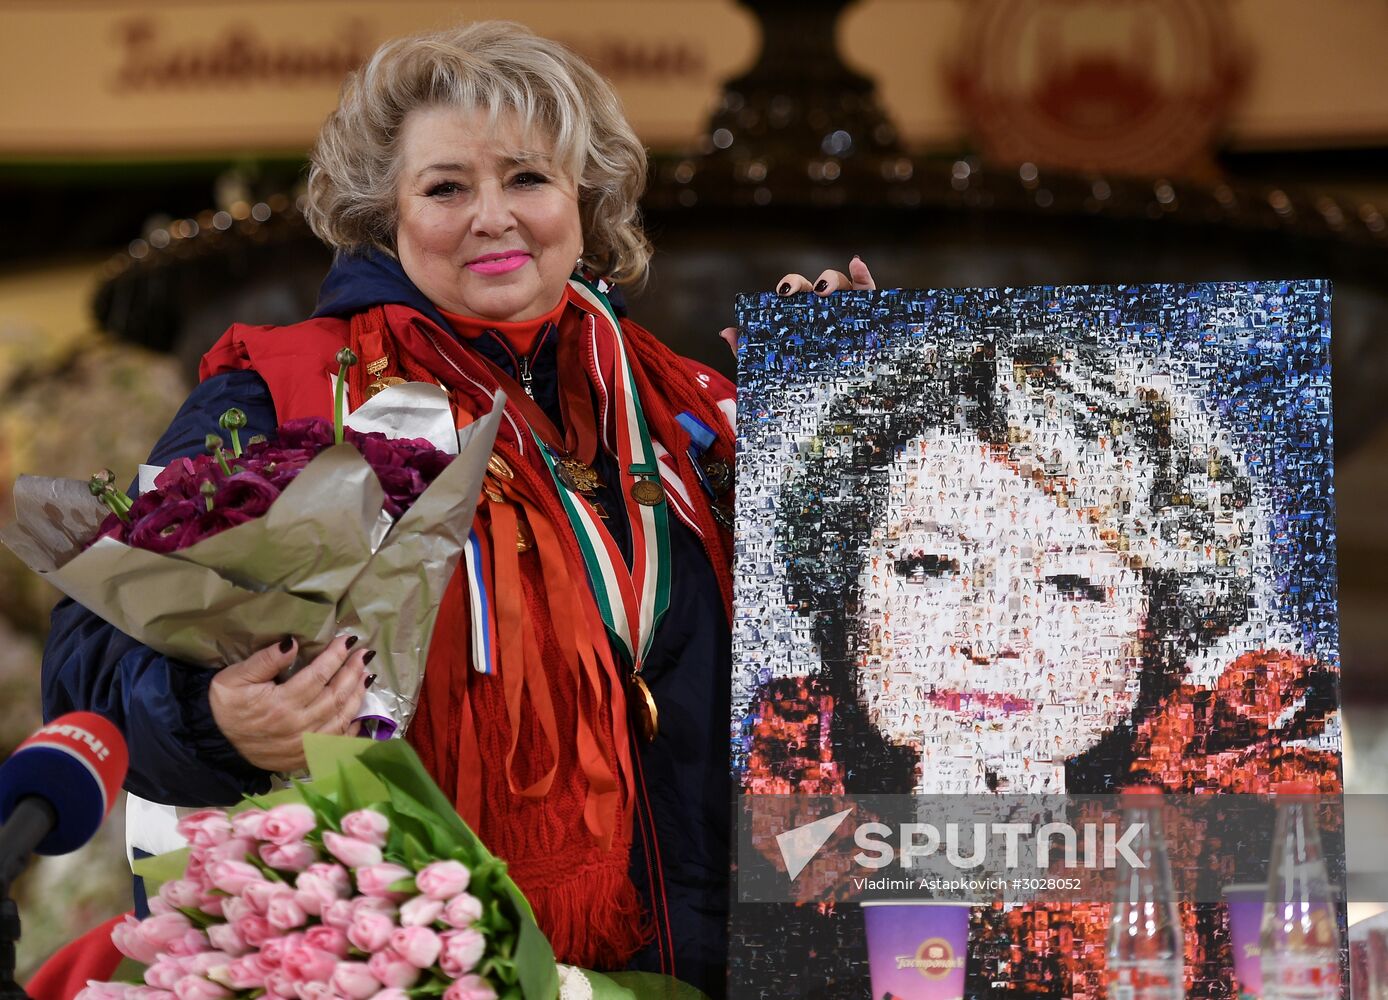 Tatyana Tarasova celebrates 70th birthday